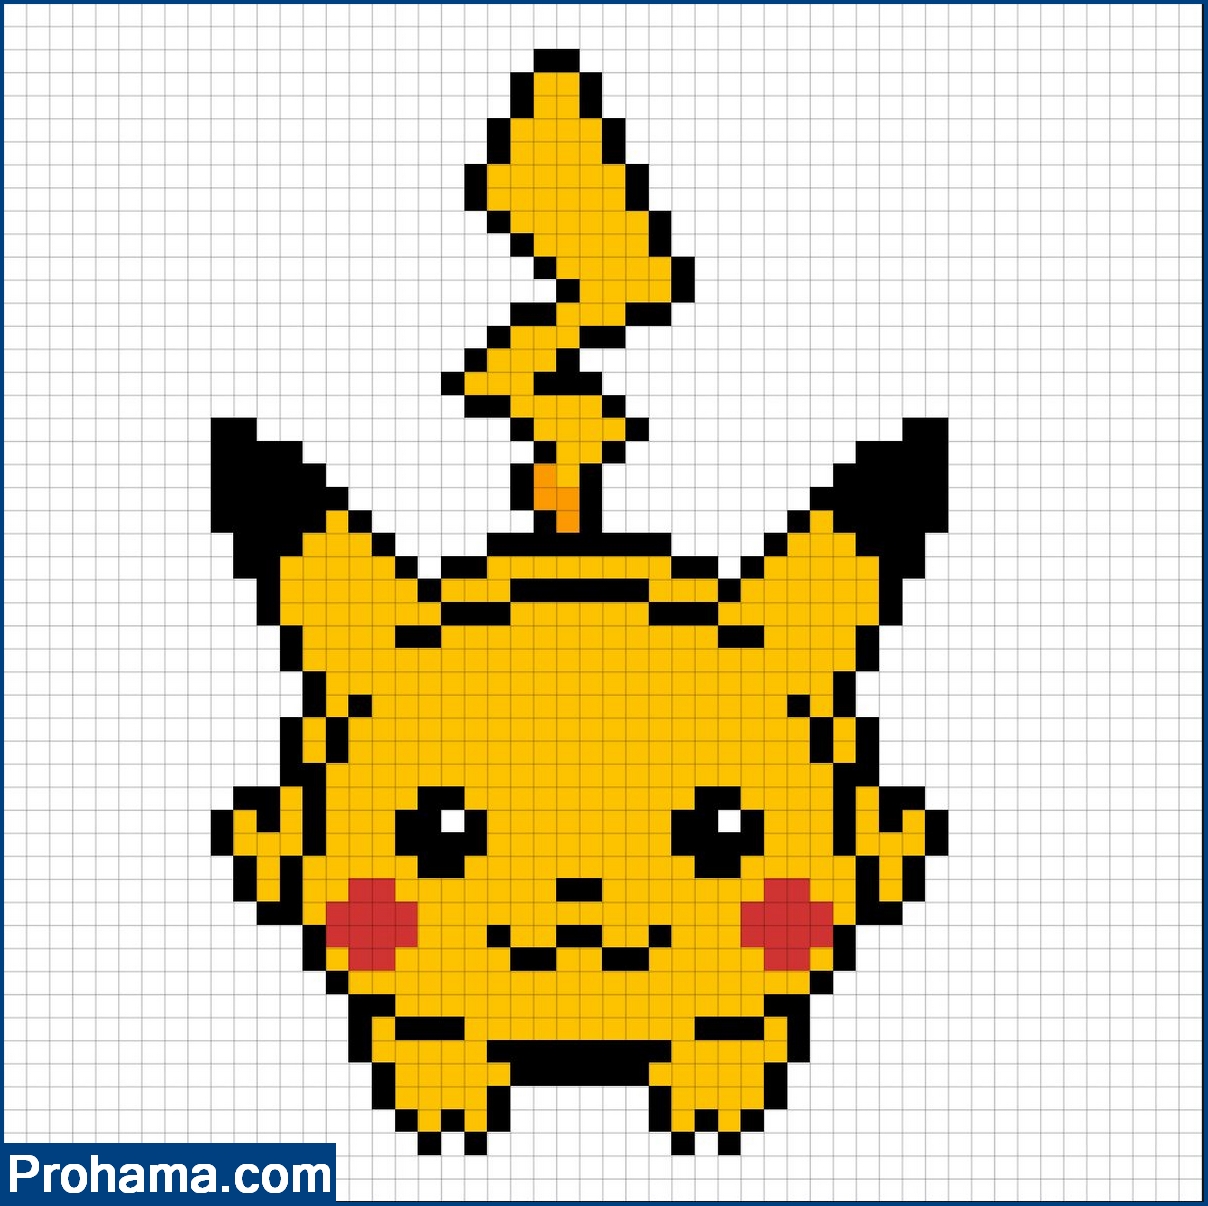 pikachu pixel art grid